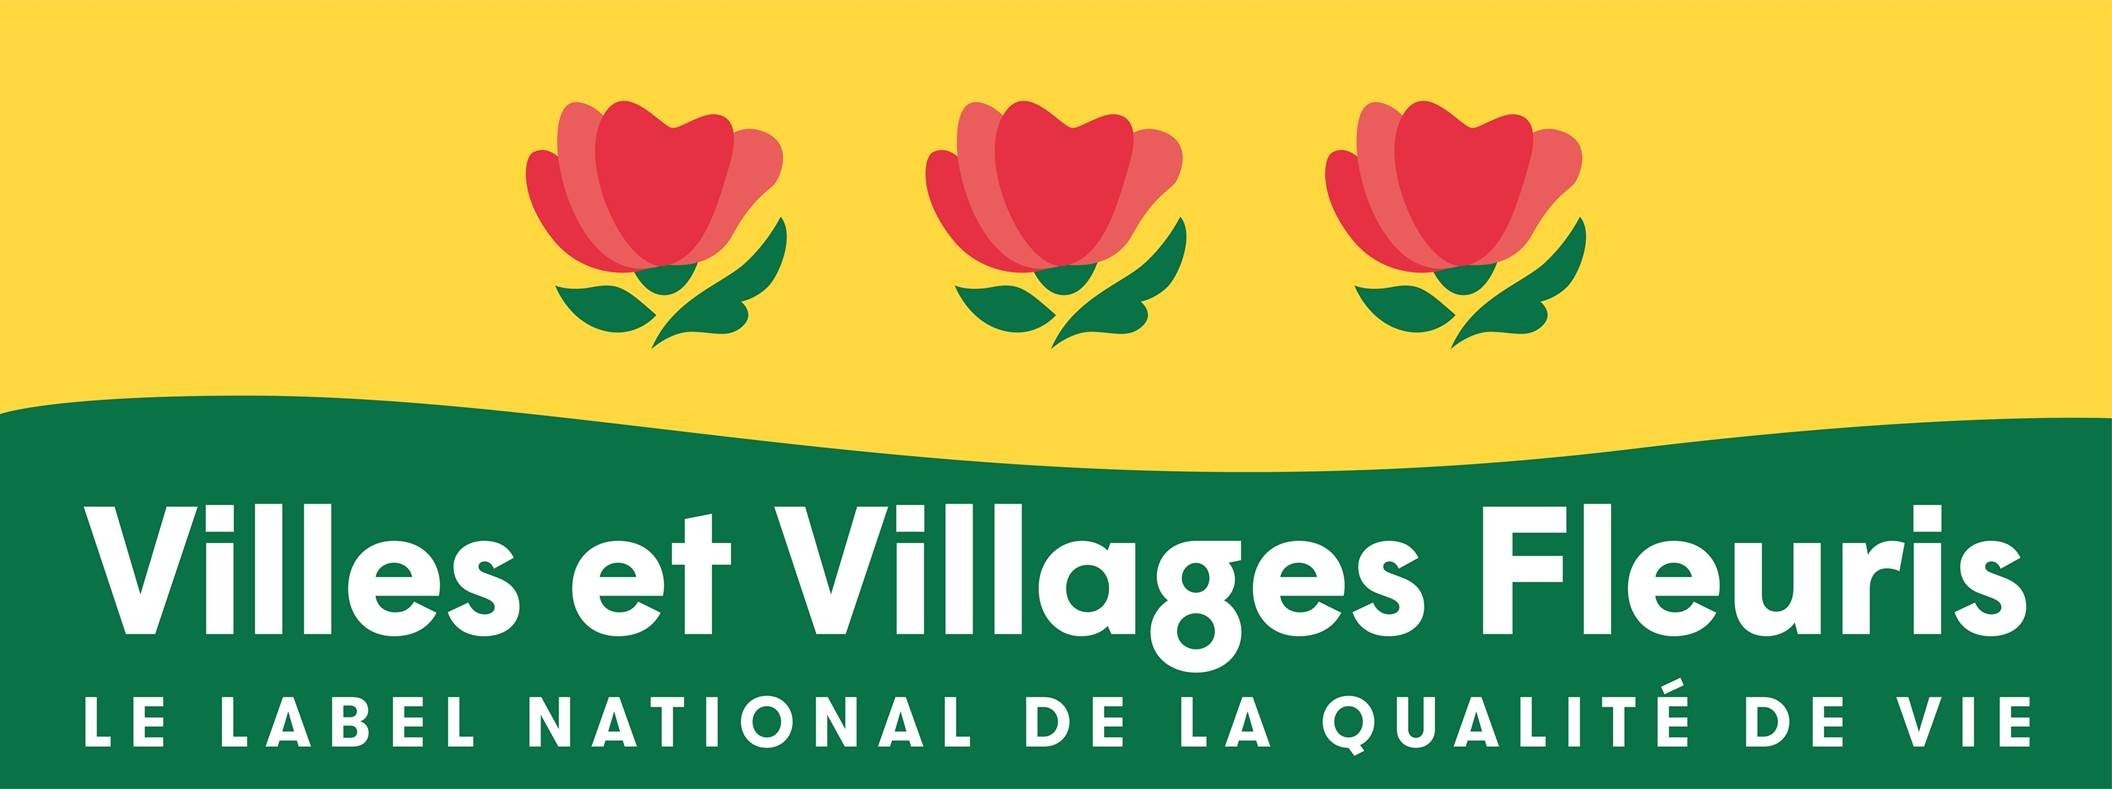 Concours des villes et villages fleuris : palmarès 2021